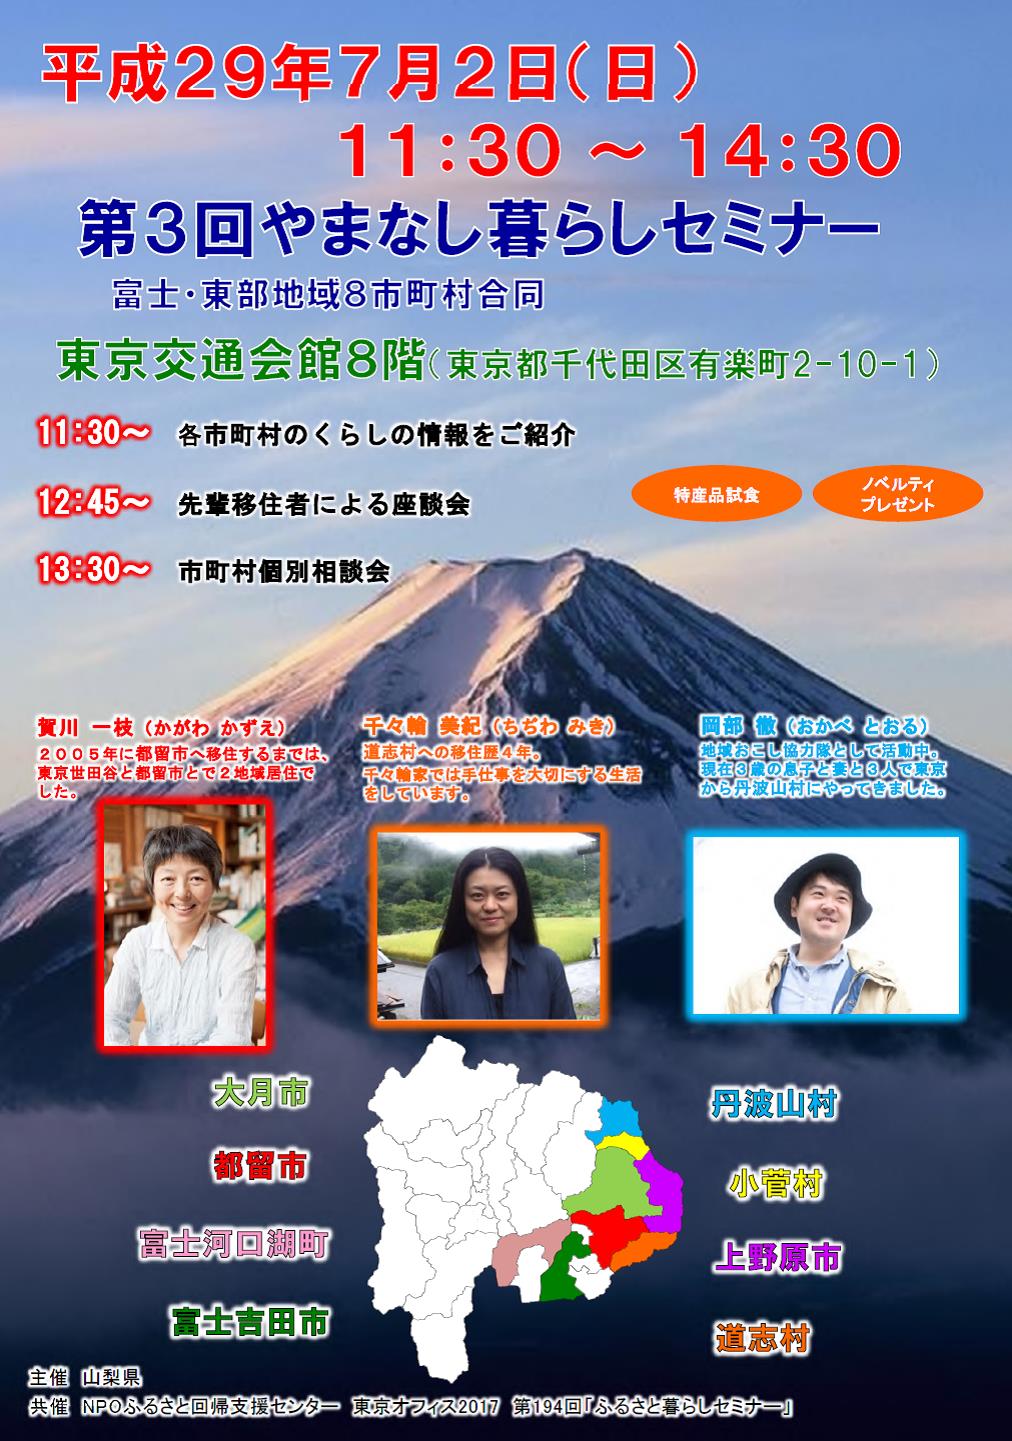 やまなし暮らしセミナー　富士・東部地域８市町村合同移住セミナー | 移住関連イベント情報